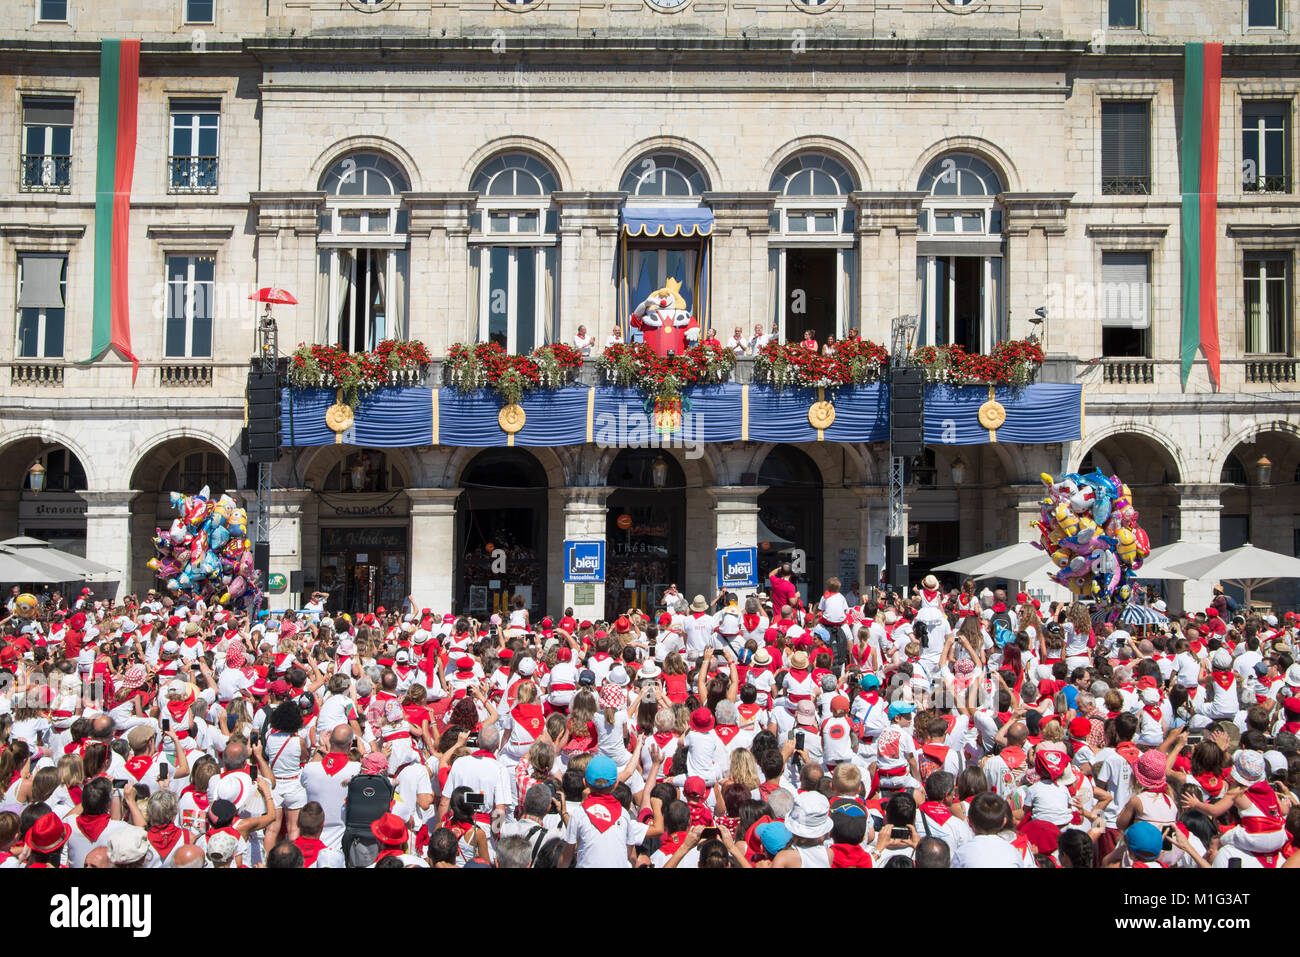 Masse von Menschen in weißen und roten jubelnder König Leon gekleidet auf dem Balkon auf dem Sommerfest von Bayonne (Feste de Bayonne), Frankreich Stockfoto